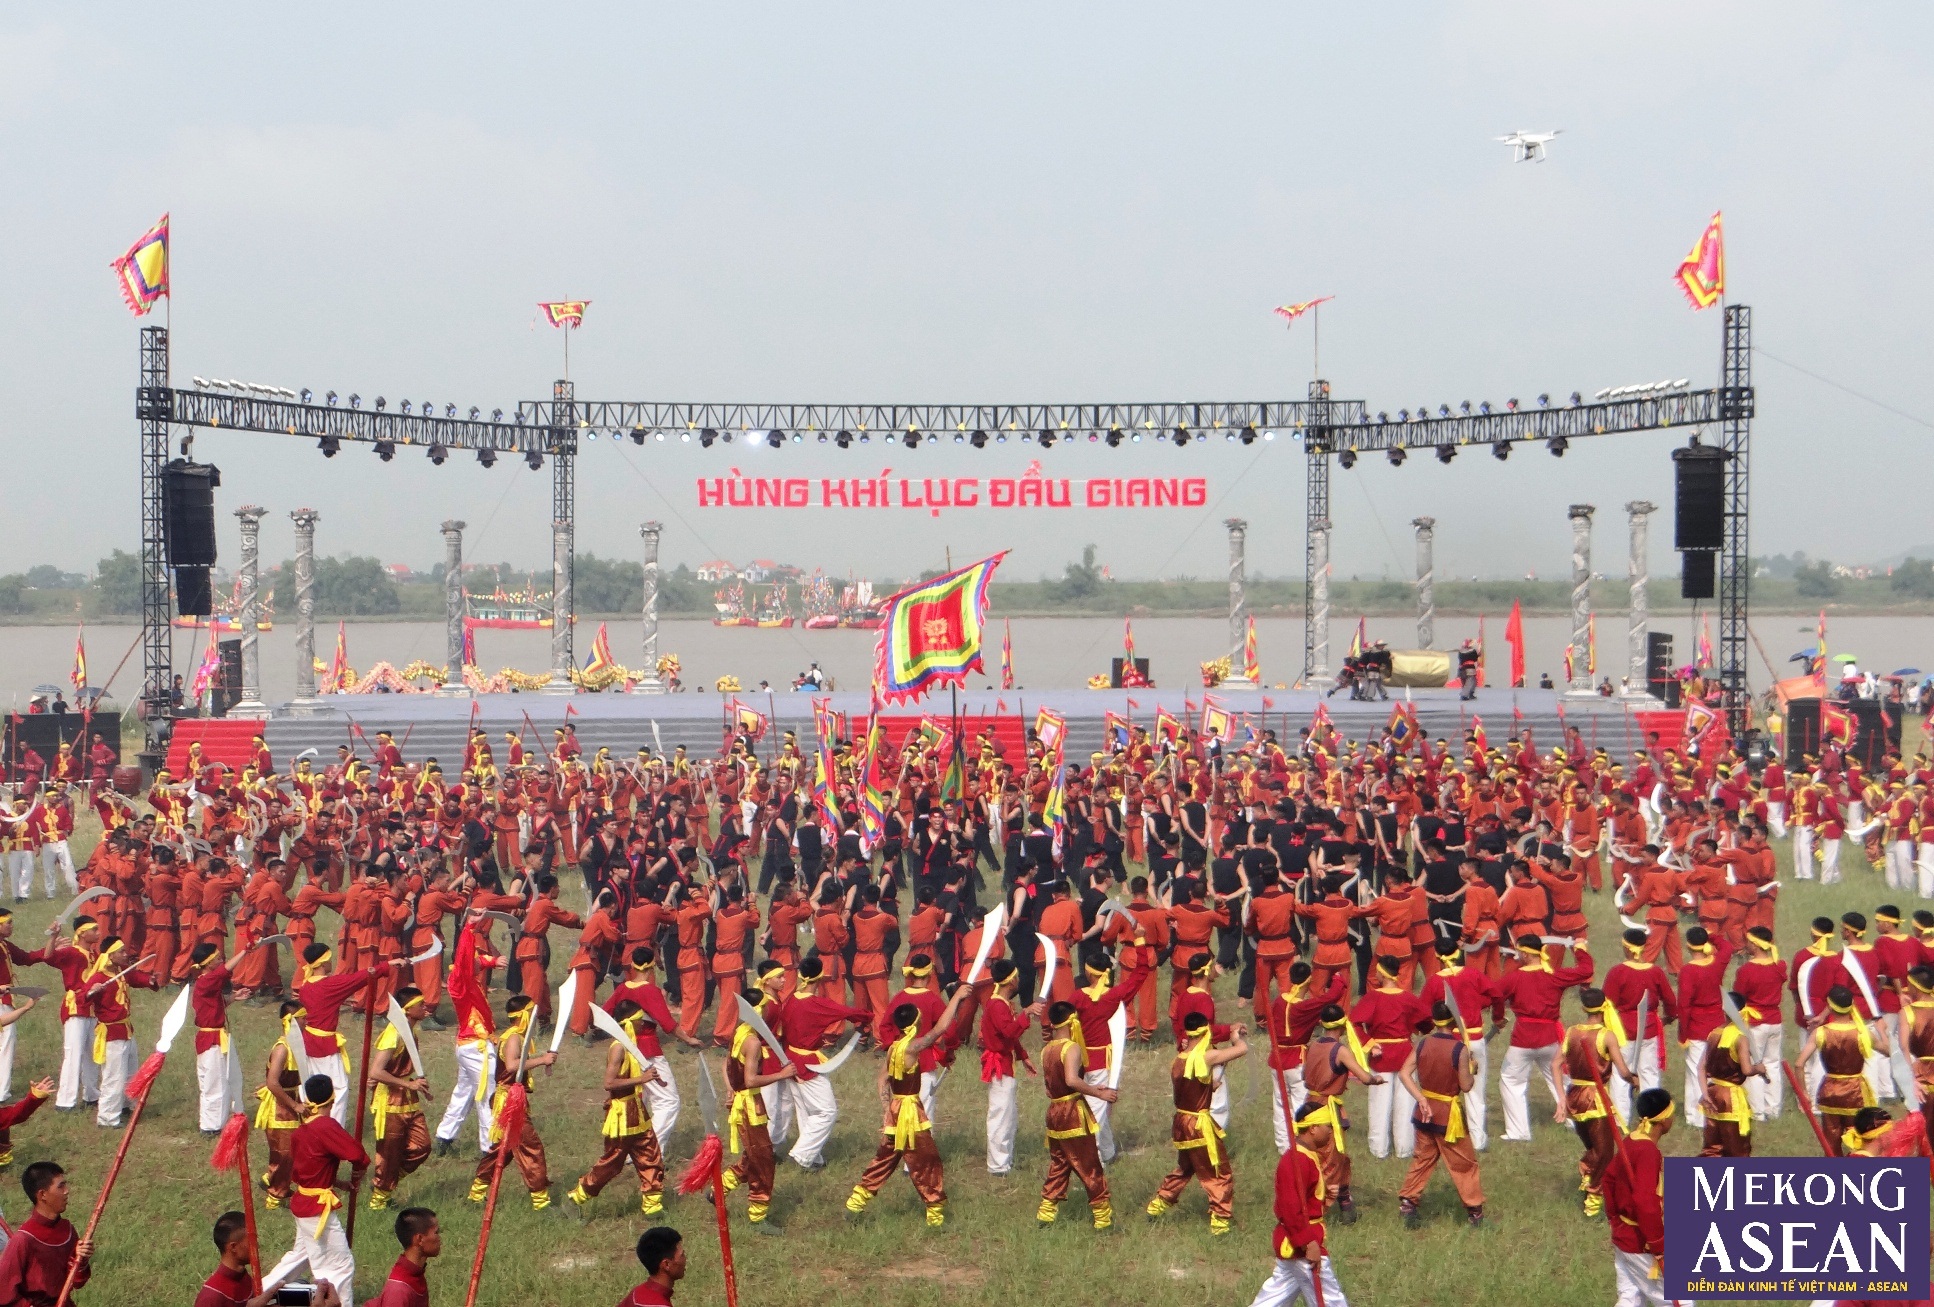  Hướng về Lễ hội mùa thu Côn Sơn - Kiếp Bạc ở Hải Dương